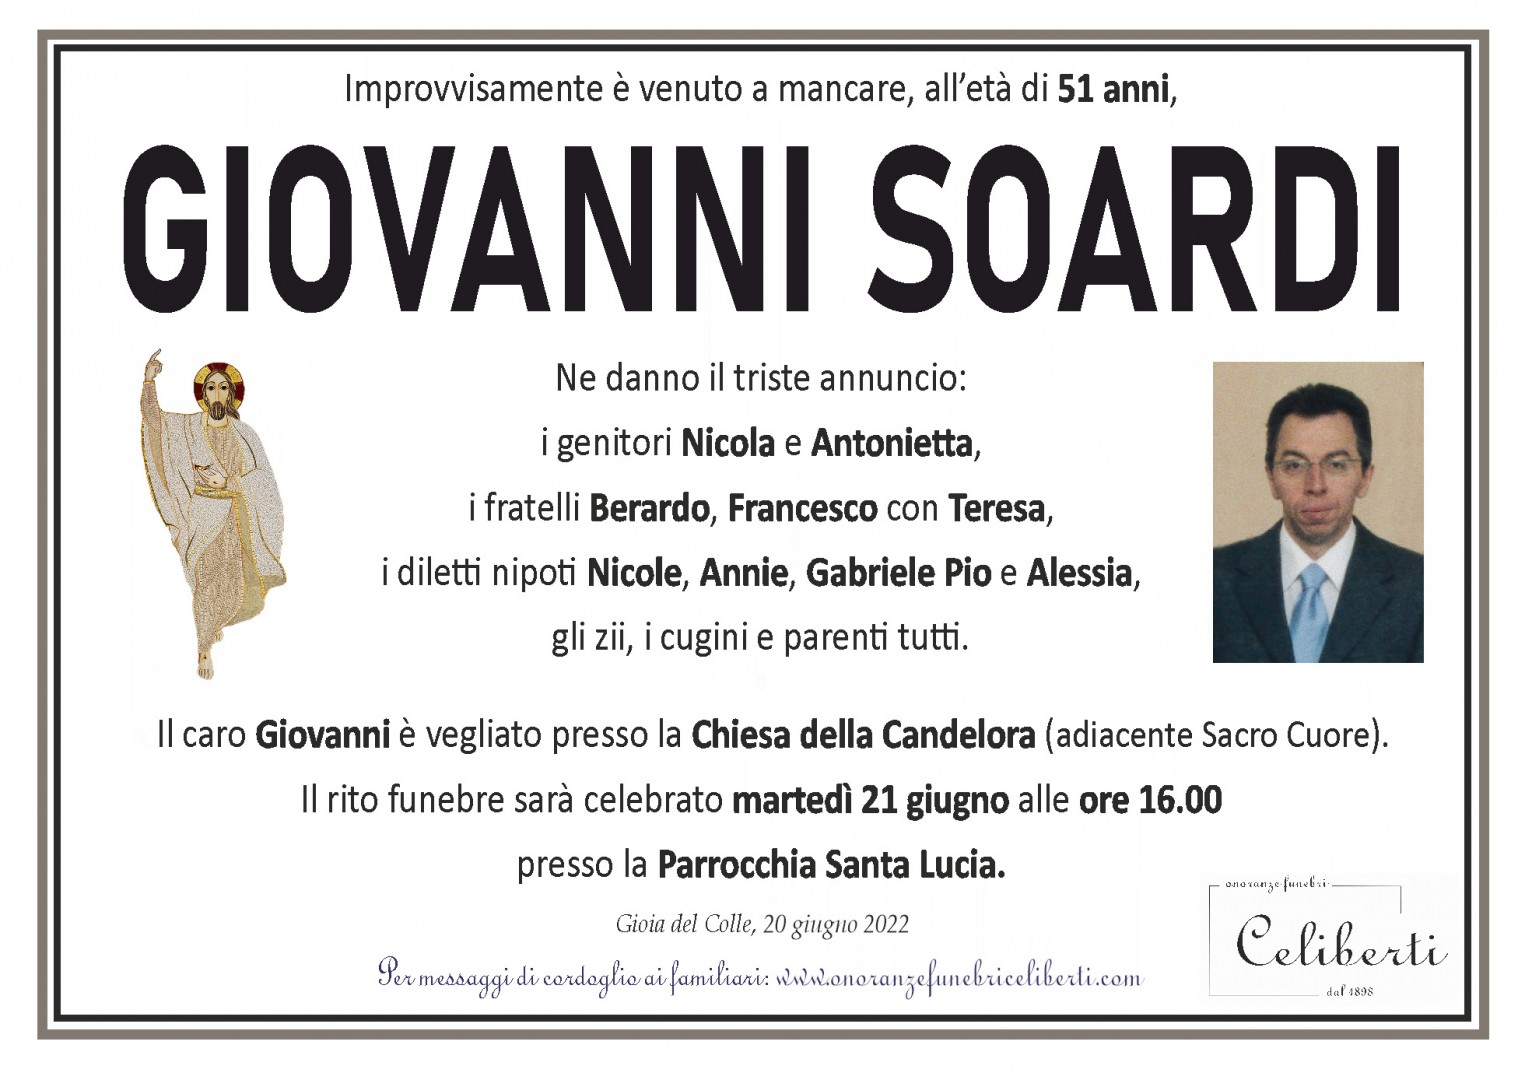 Giovanni Soardi